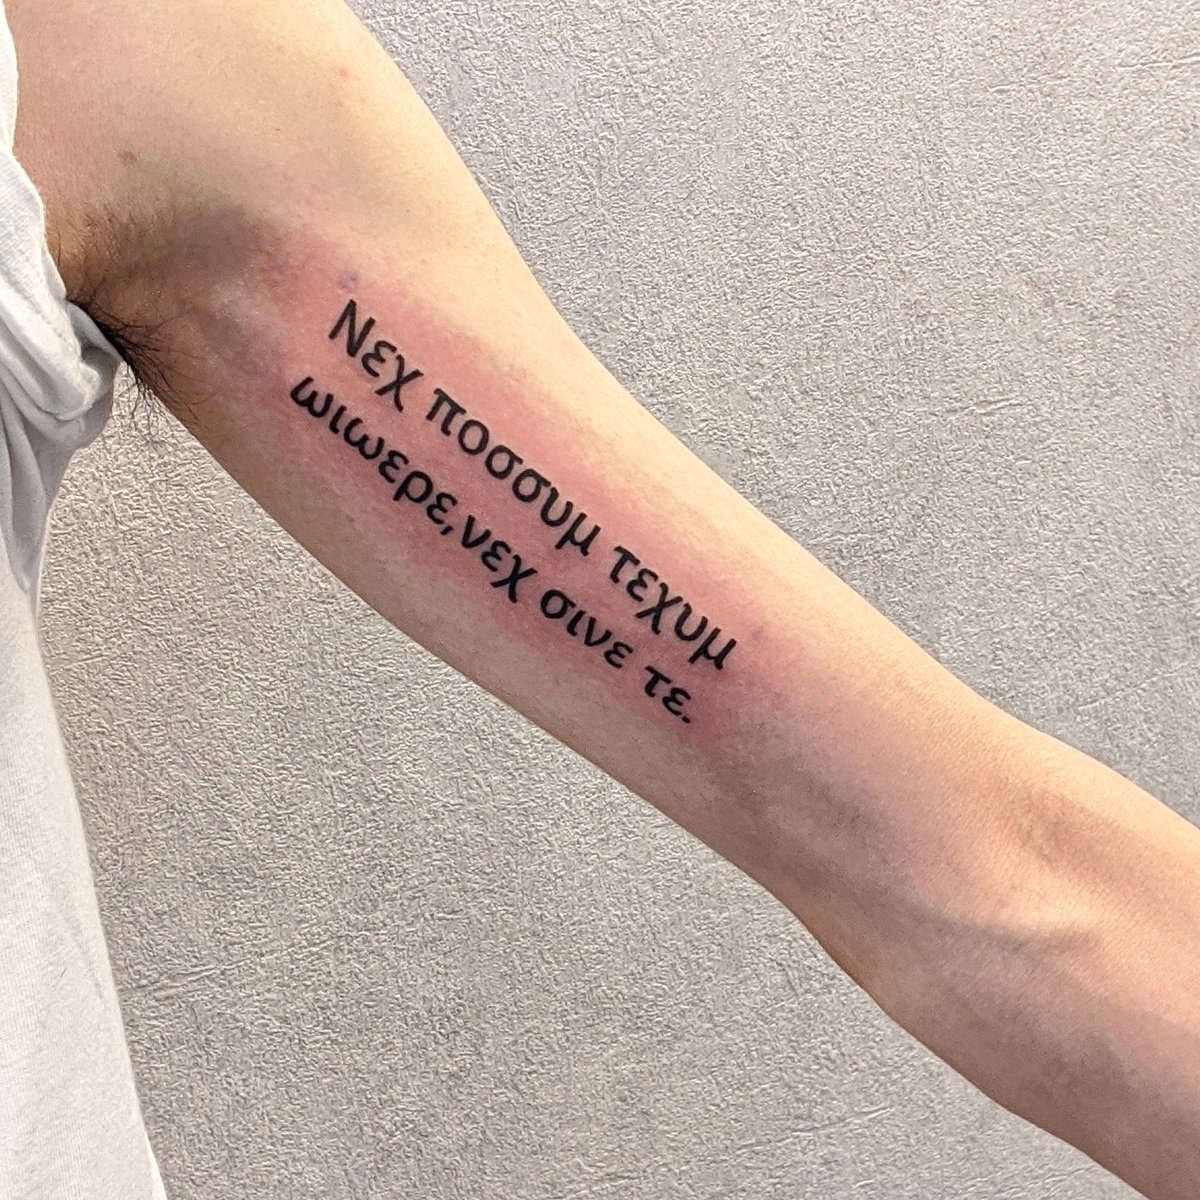 Viagem Ink Tattoo Studio おはようございます 横浜 元町中華街のタトゥースタジオ Viagemink です ギリシャ語は全く習った事がないので キーボードを打つだけでも難しいものです 夫婦営業 ファッションタトゥー おしゃれタトゥー 個性